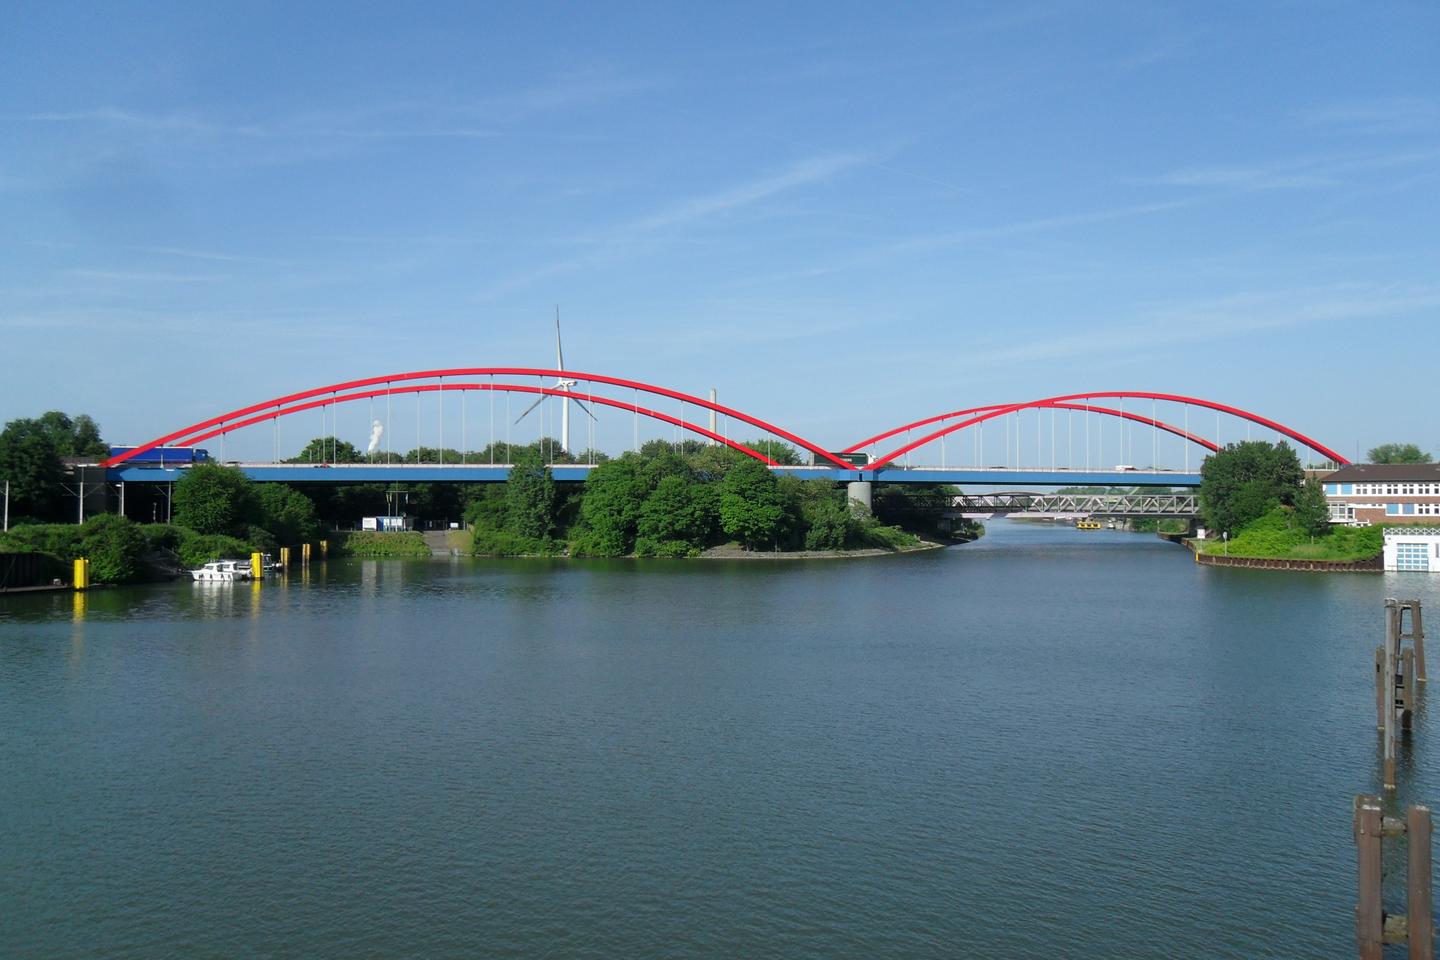 Panoramaansicht der A42-Brücke über den Rhein-Herne-Kanal bei Essen.